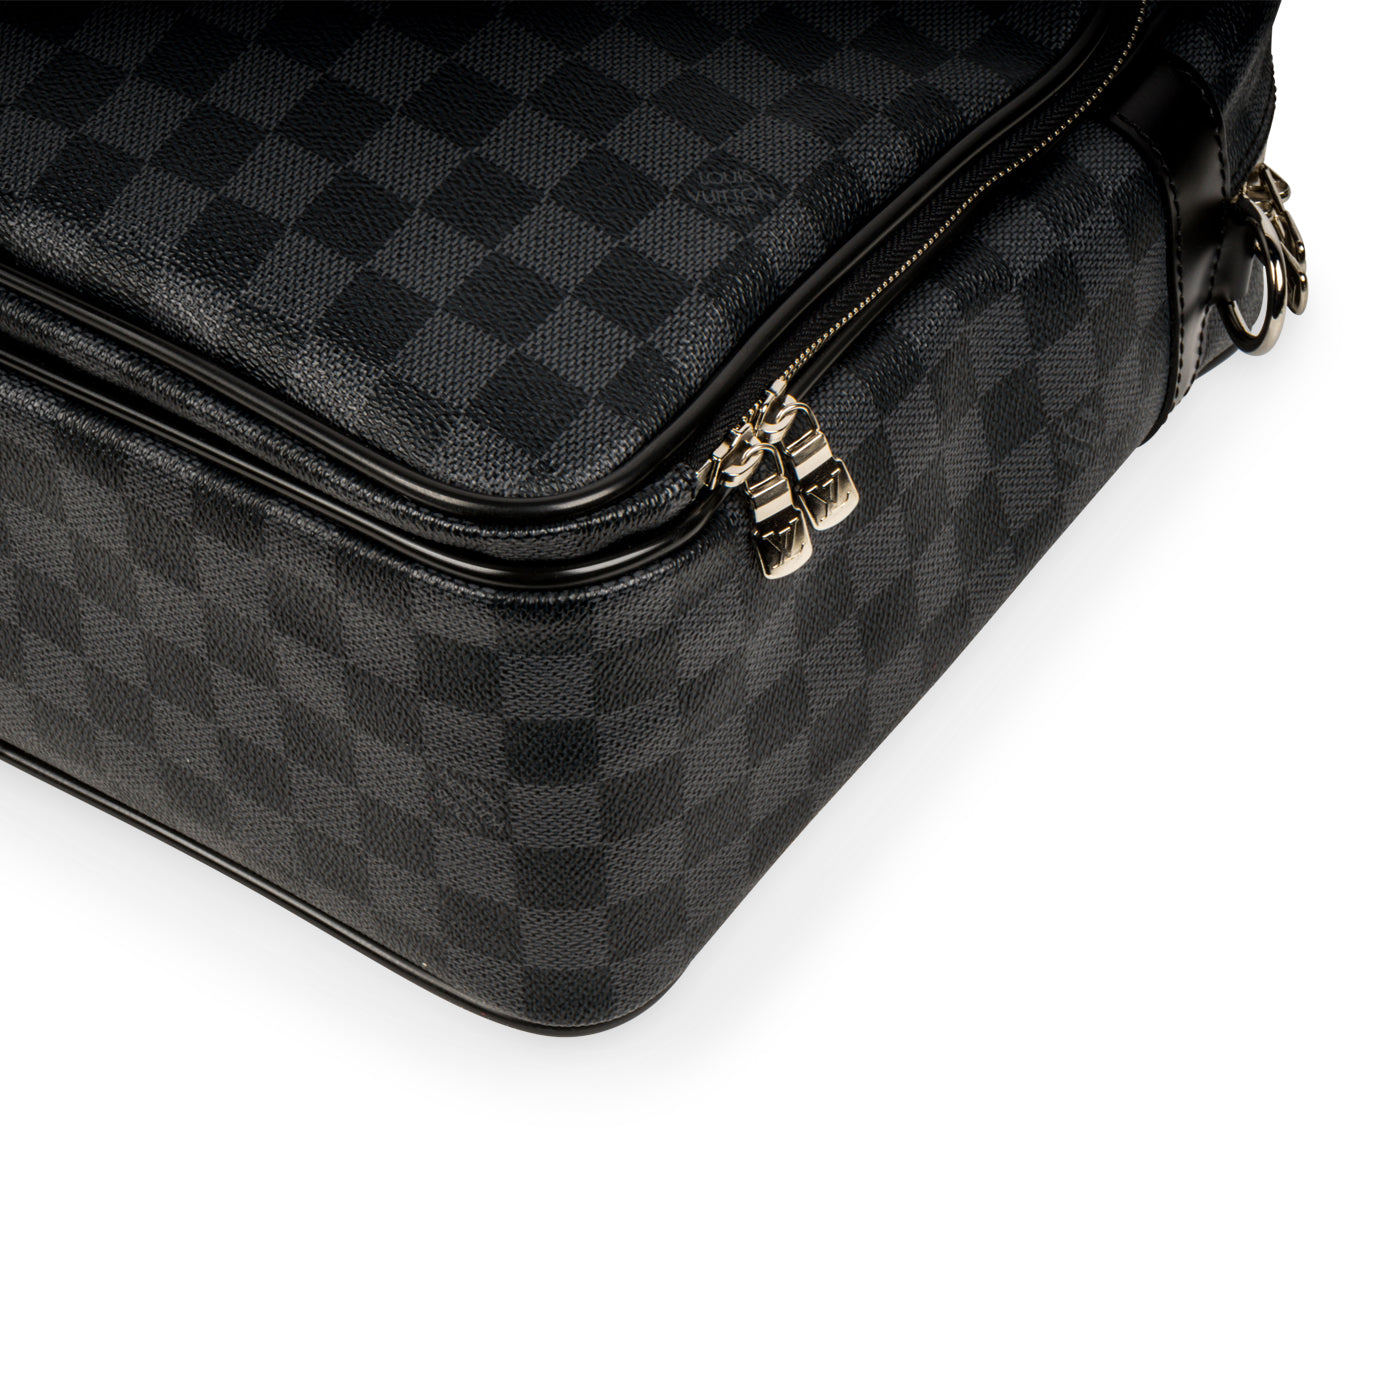 Louis Vuitton Damier Graphite Coated Canvas Icare Laptop Briefcase